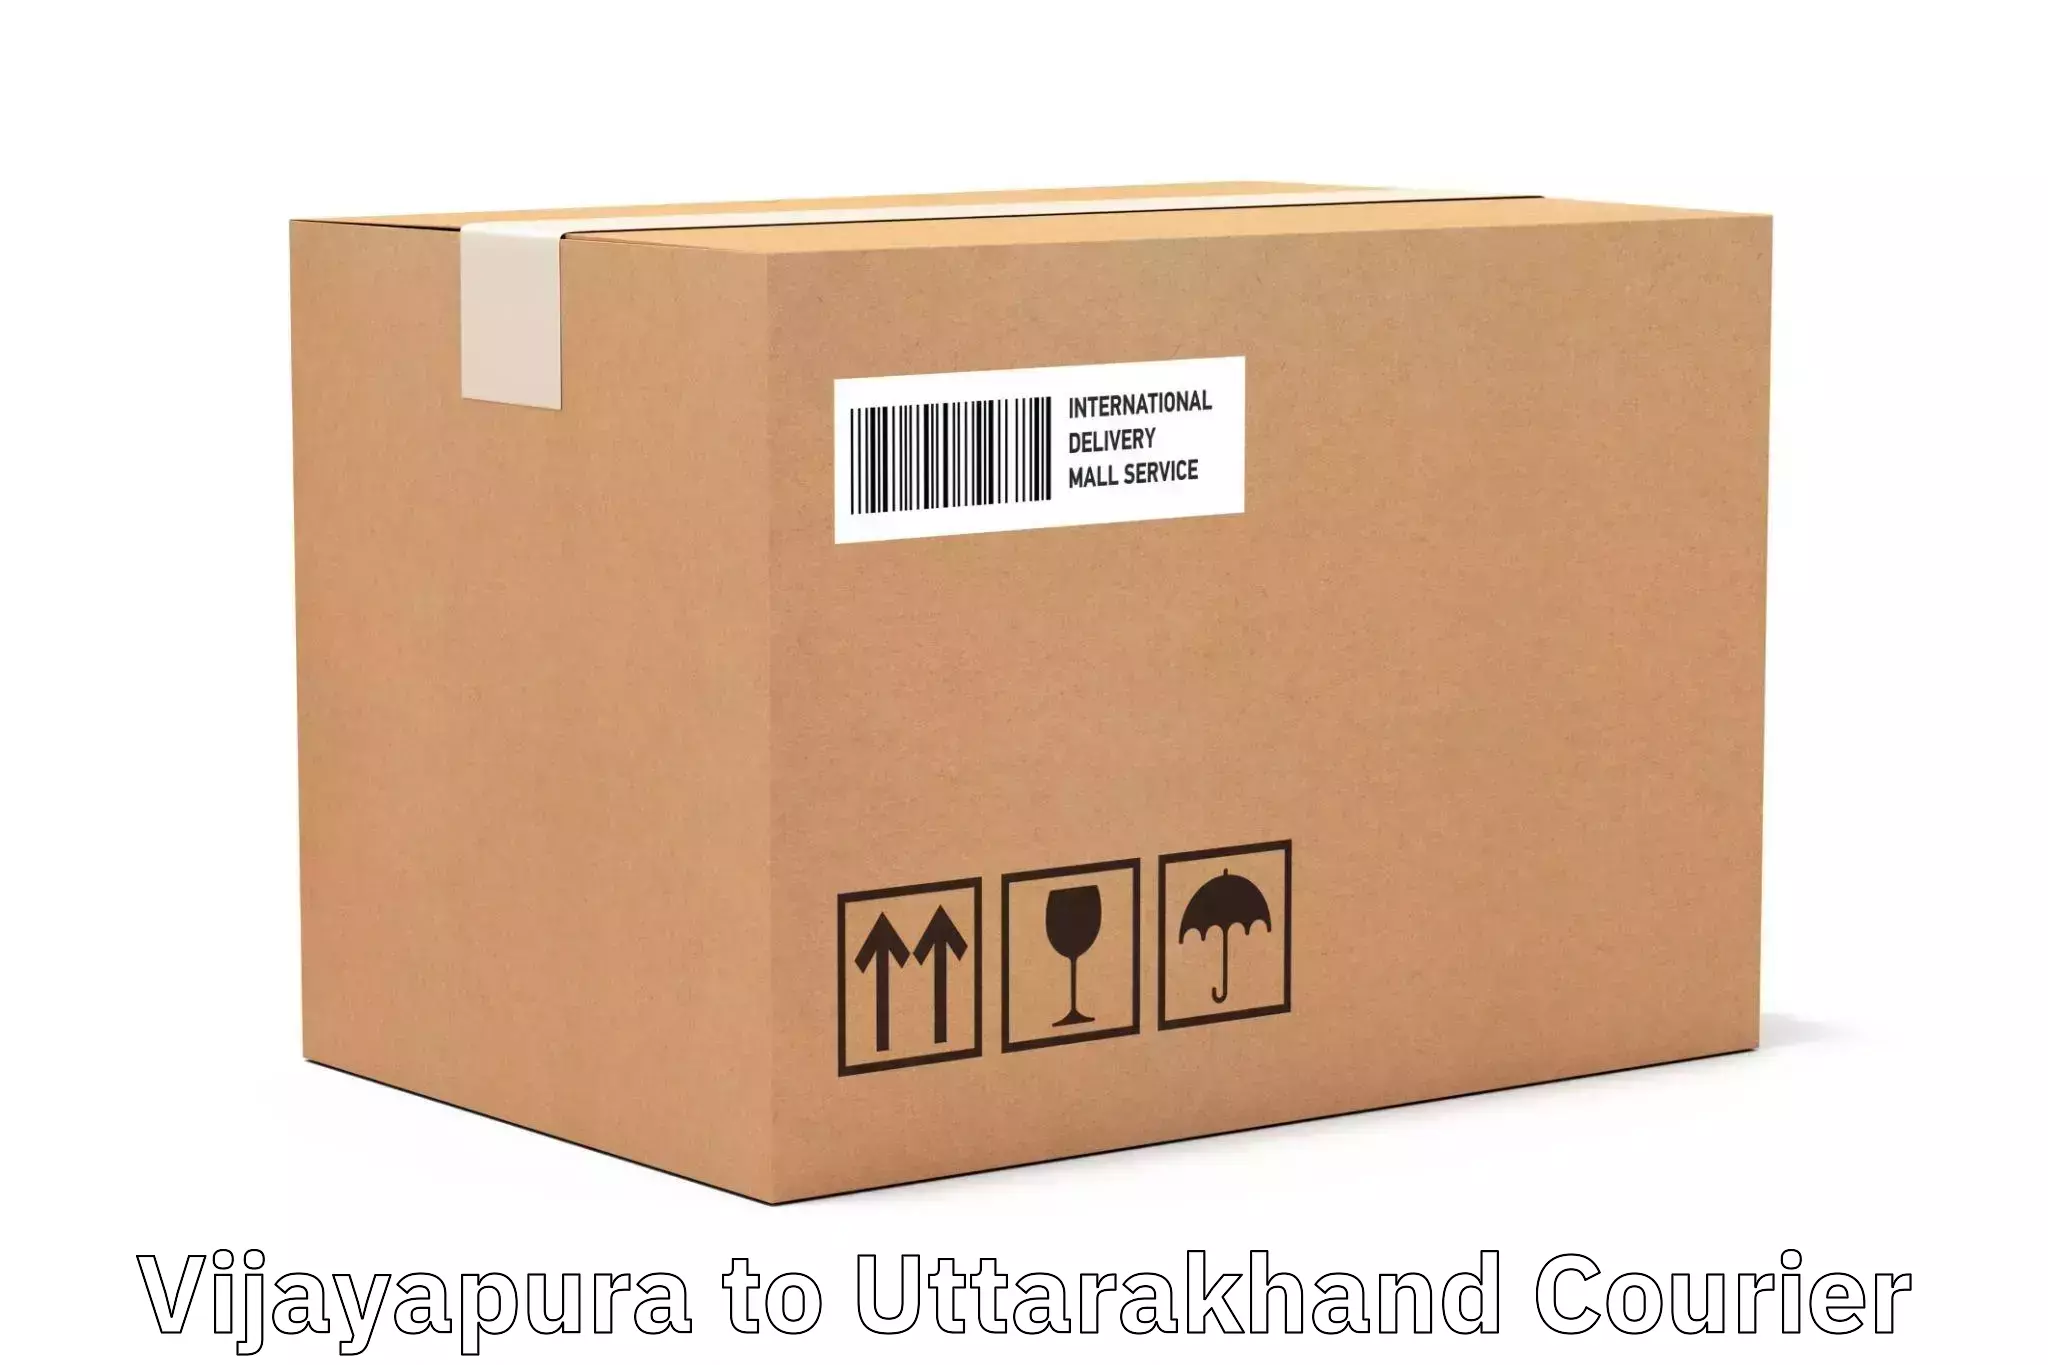 Digital shipping tools Vijayapura to NIT Garhwal